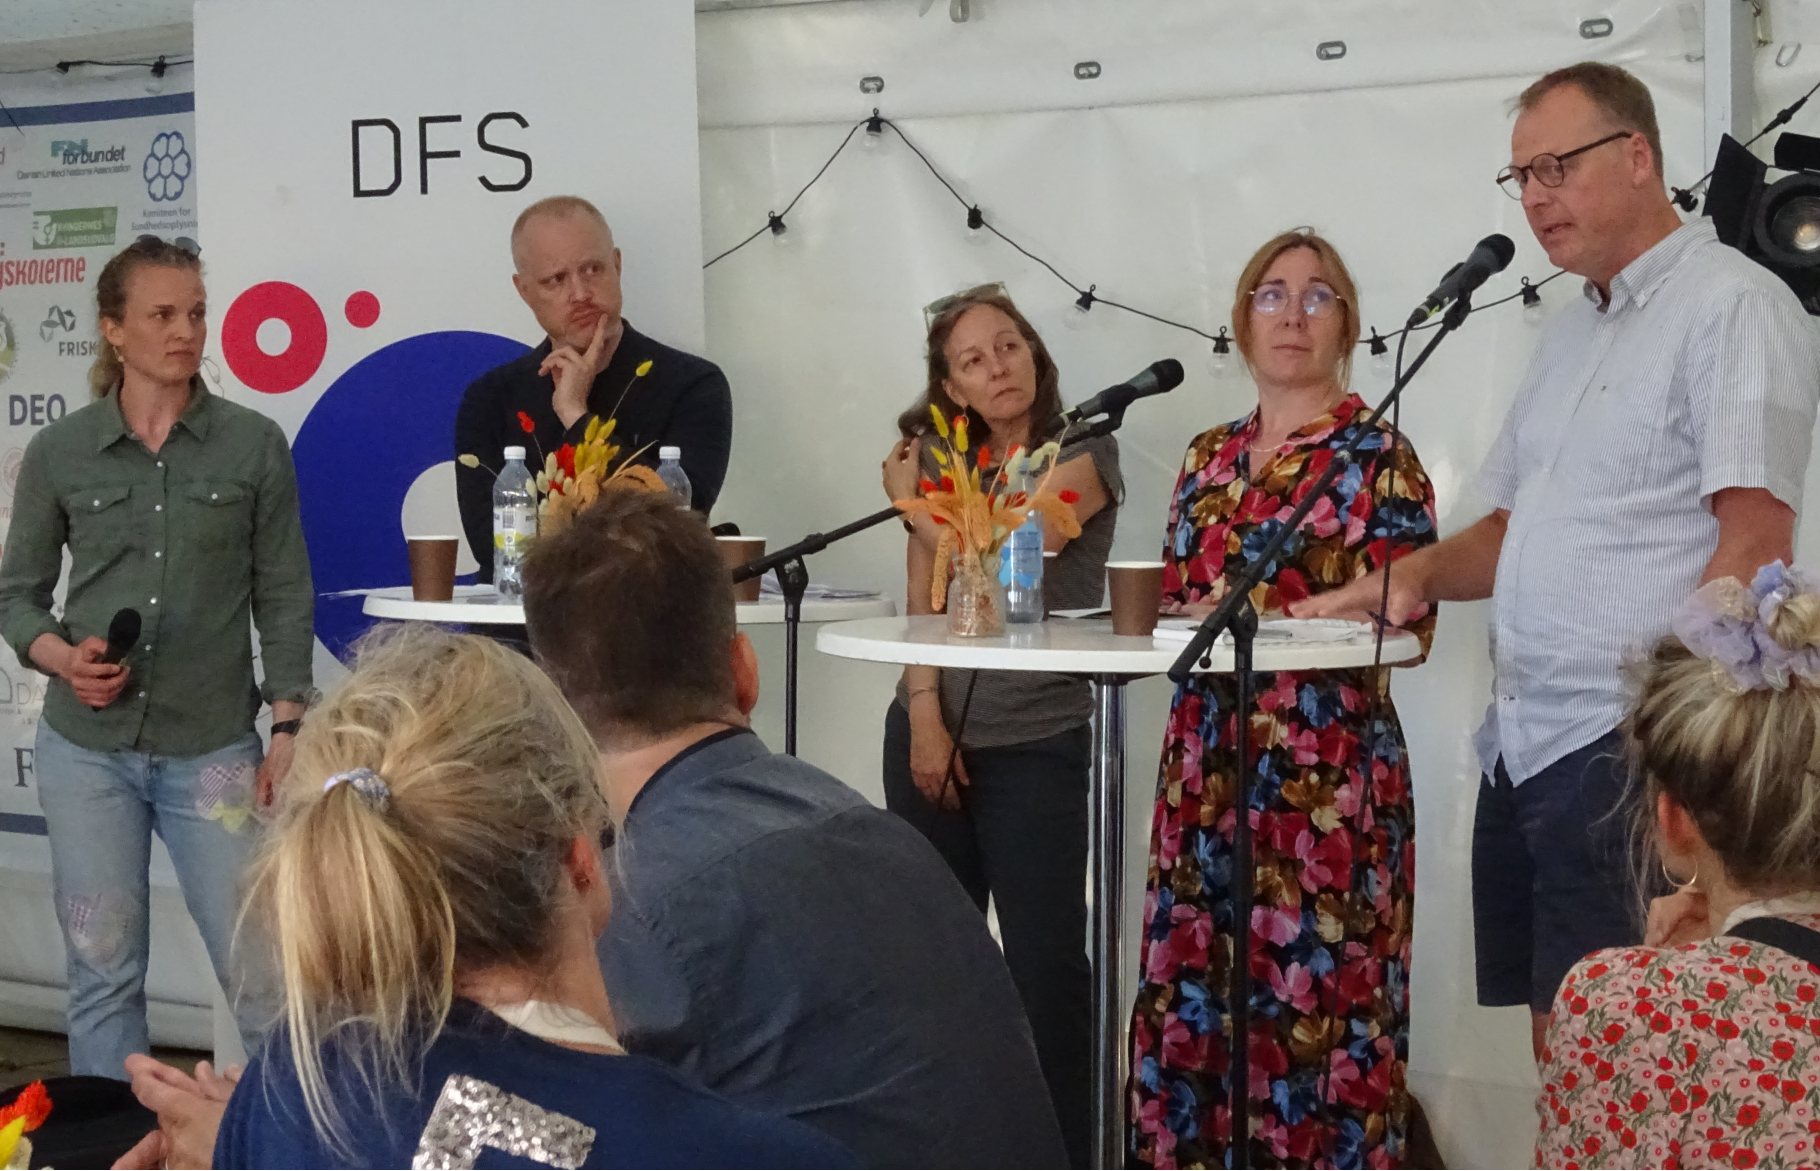 Fra venstre: Moderator Sofie Buch Hoyer, David Dreyer Lassen, Noemi Katznelson, Elise Greve og Lars B. Kristensen